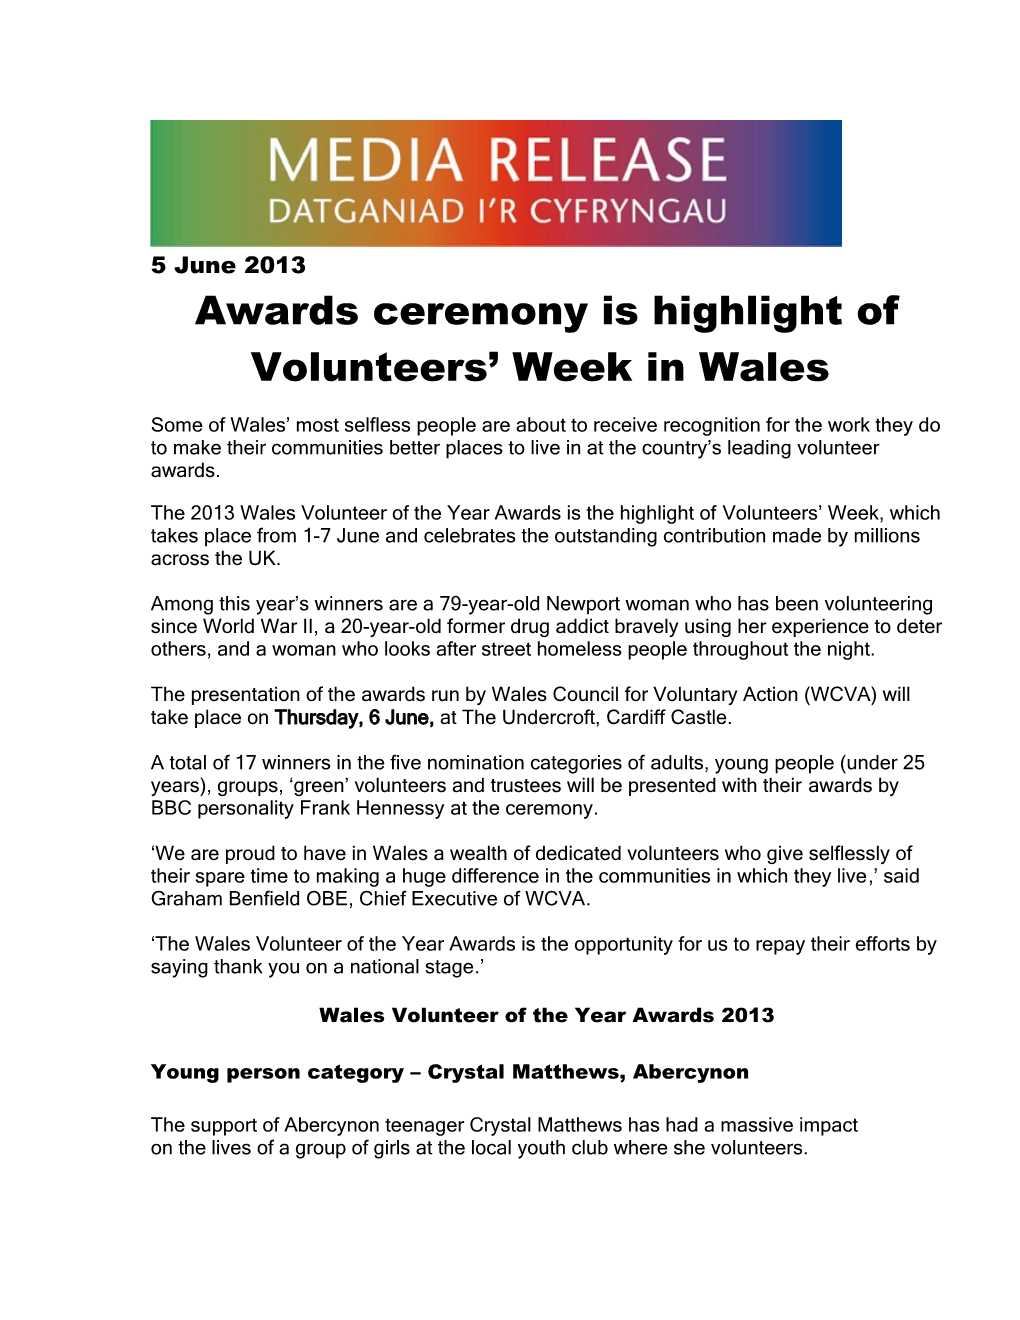 Awards Ceremony Is Highlight of Volunteers Week in Wales